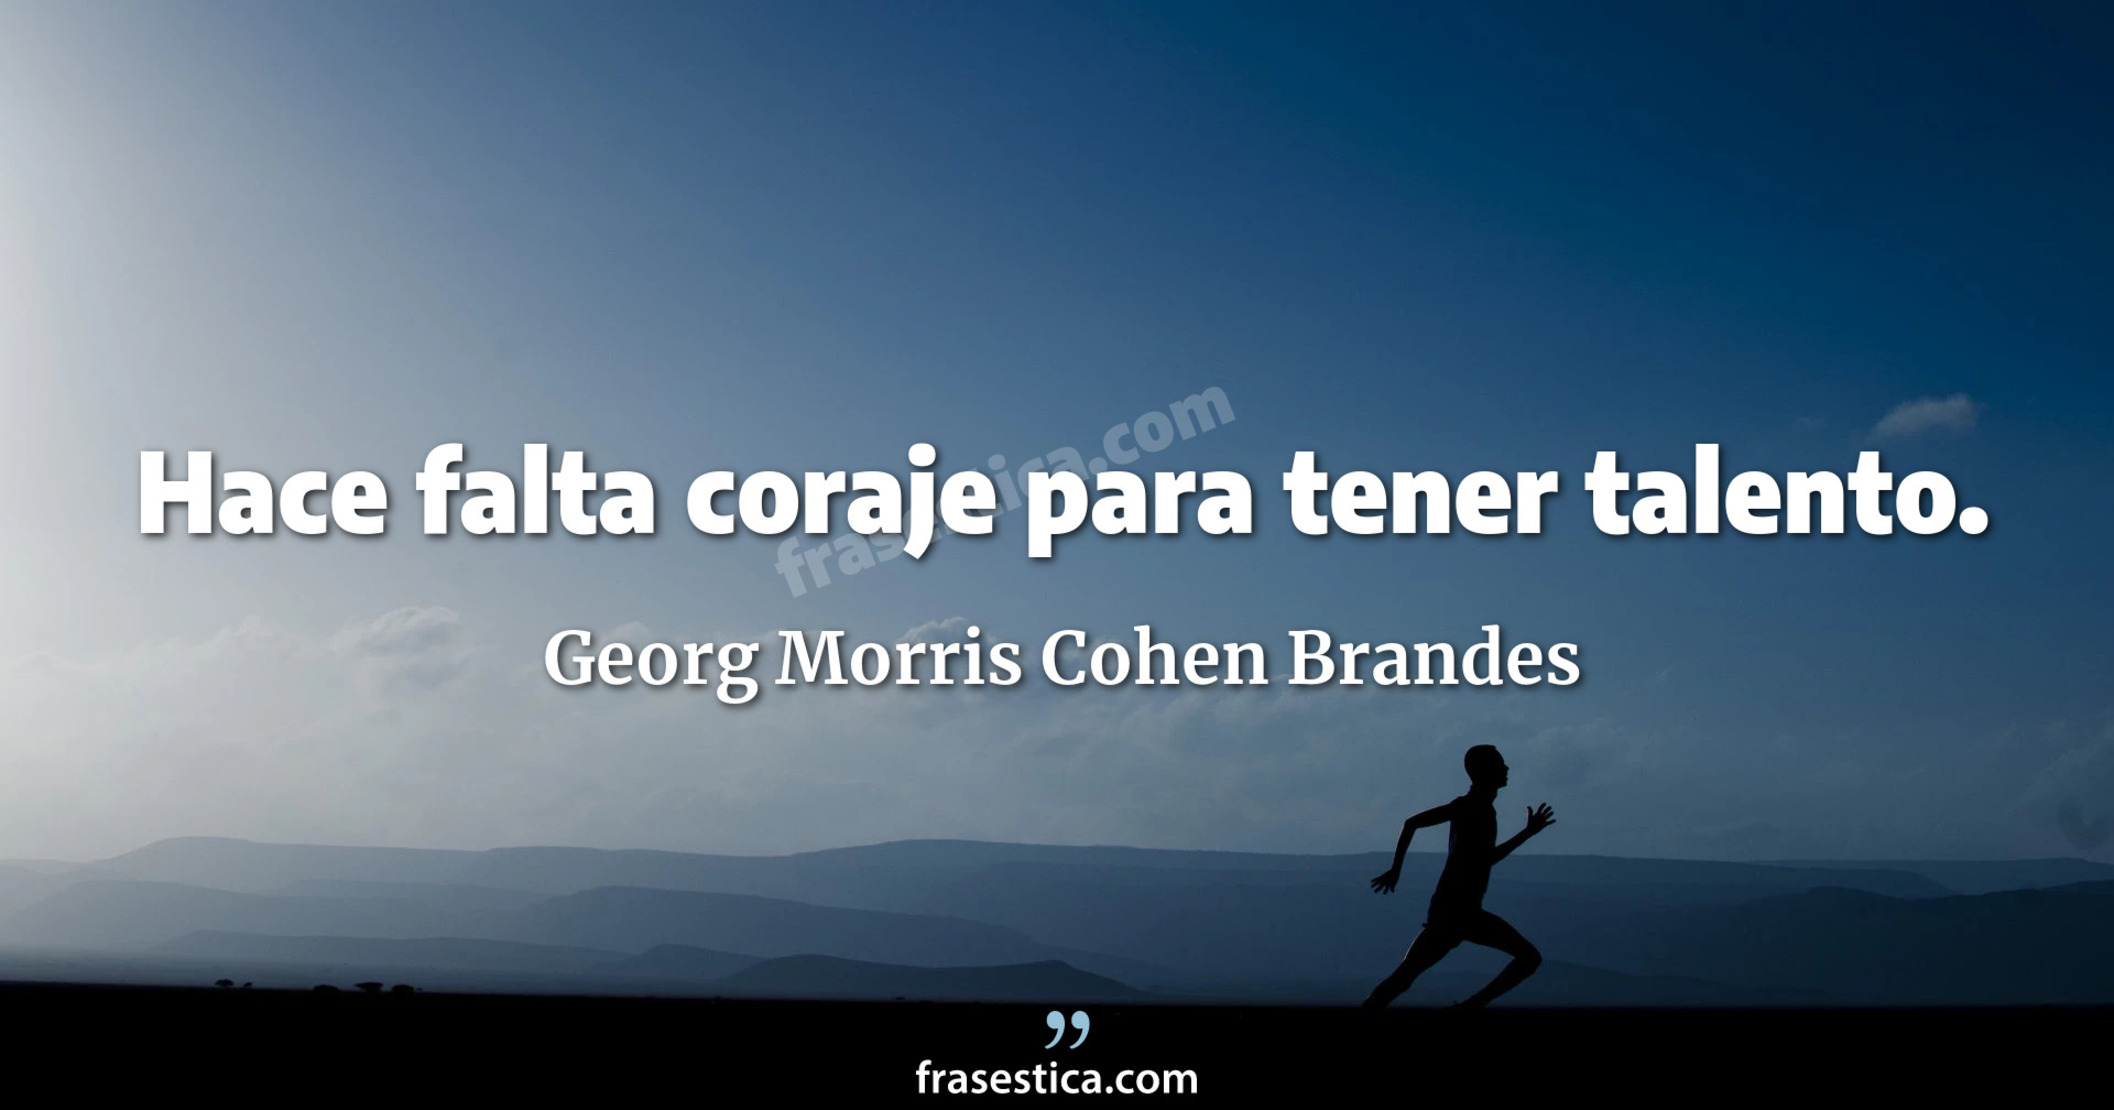 Hace falta coraje para tener talento. - Georg Morris Cohen Brandes